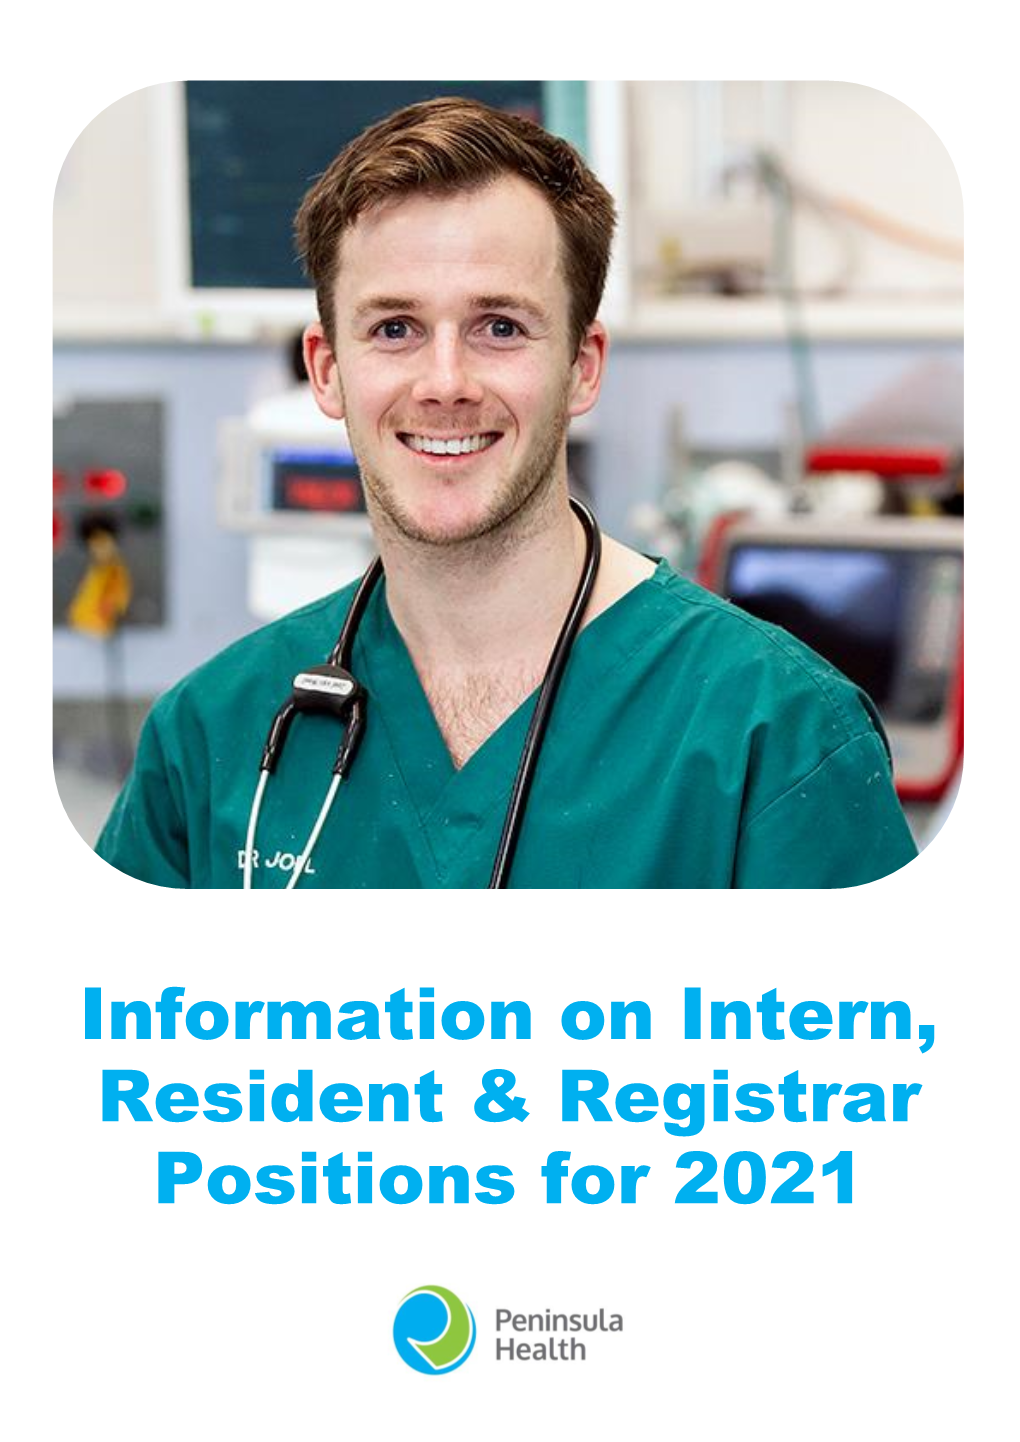 Information on Intern, Resident & Registrar Positions for 2021